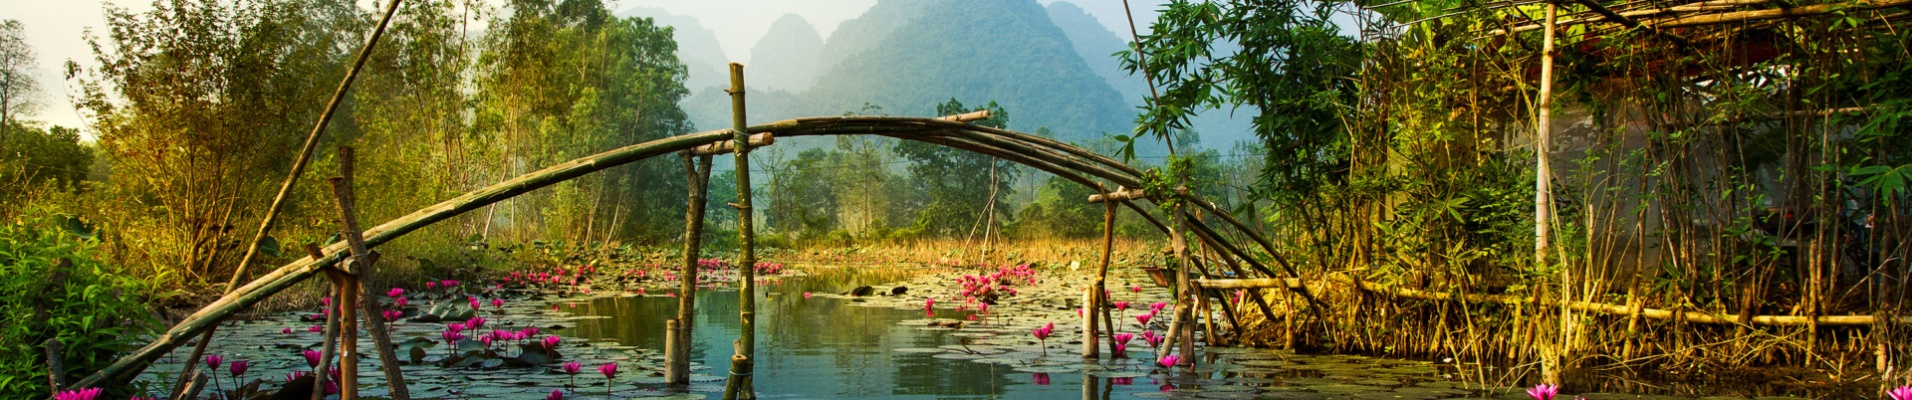 Lotus sur la rivière Yen, Vietnam